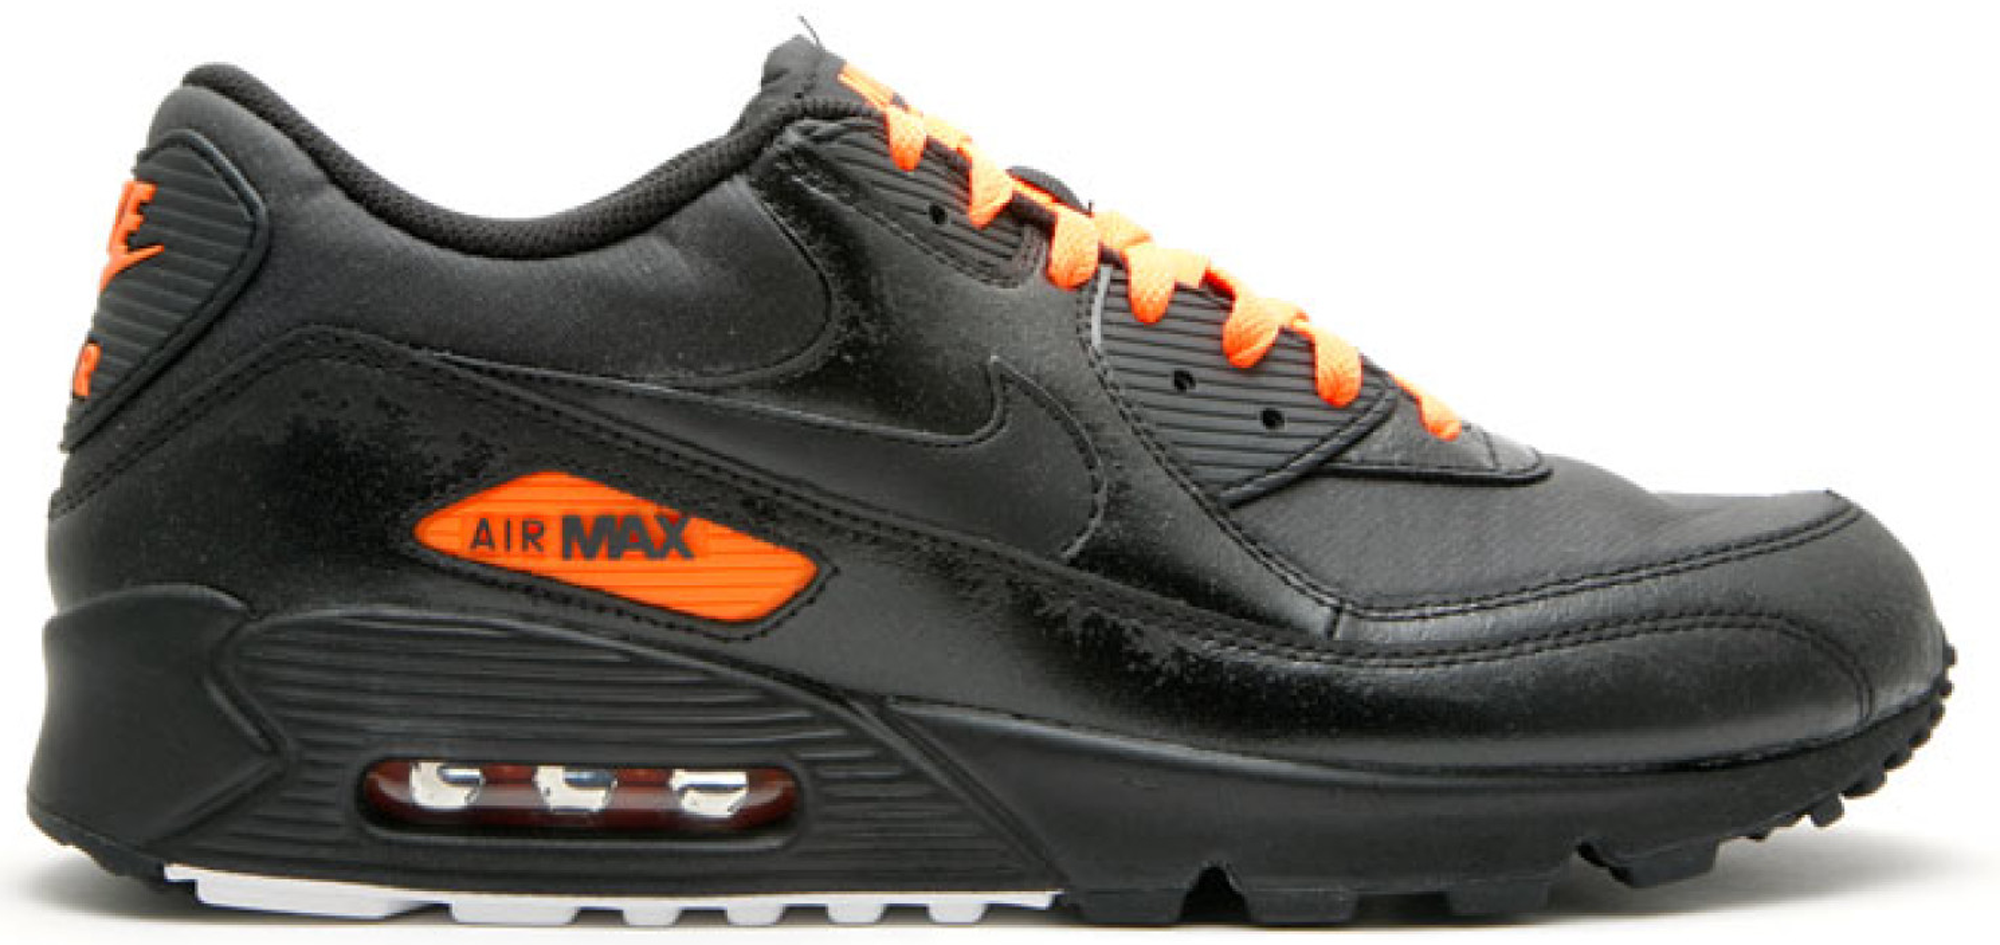 air max 90s black and orange